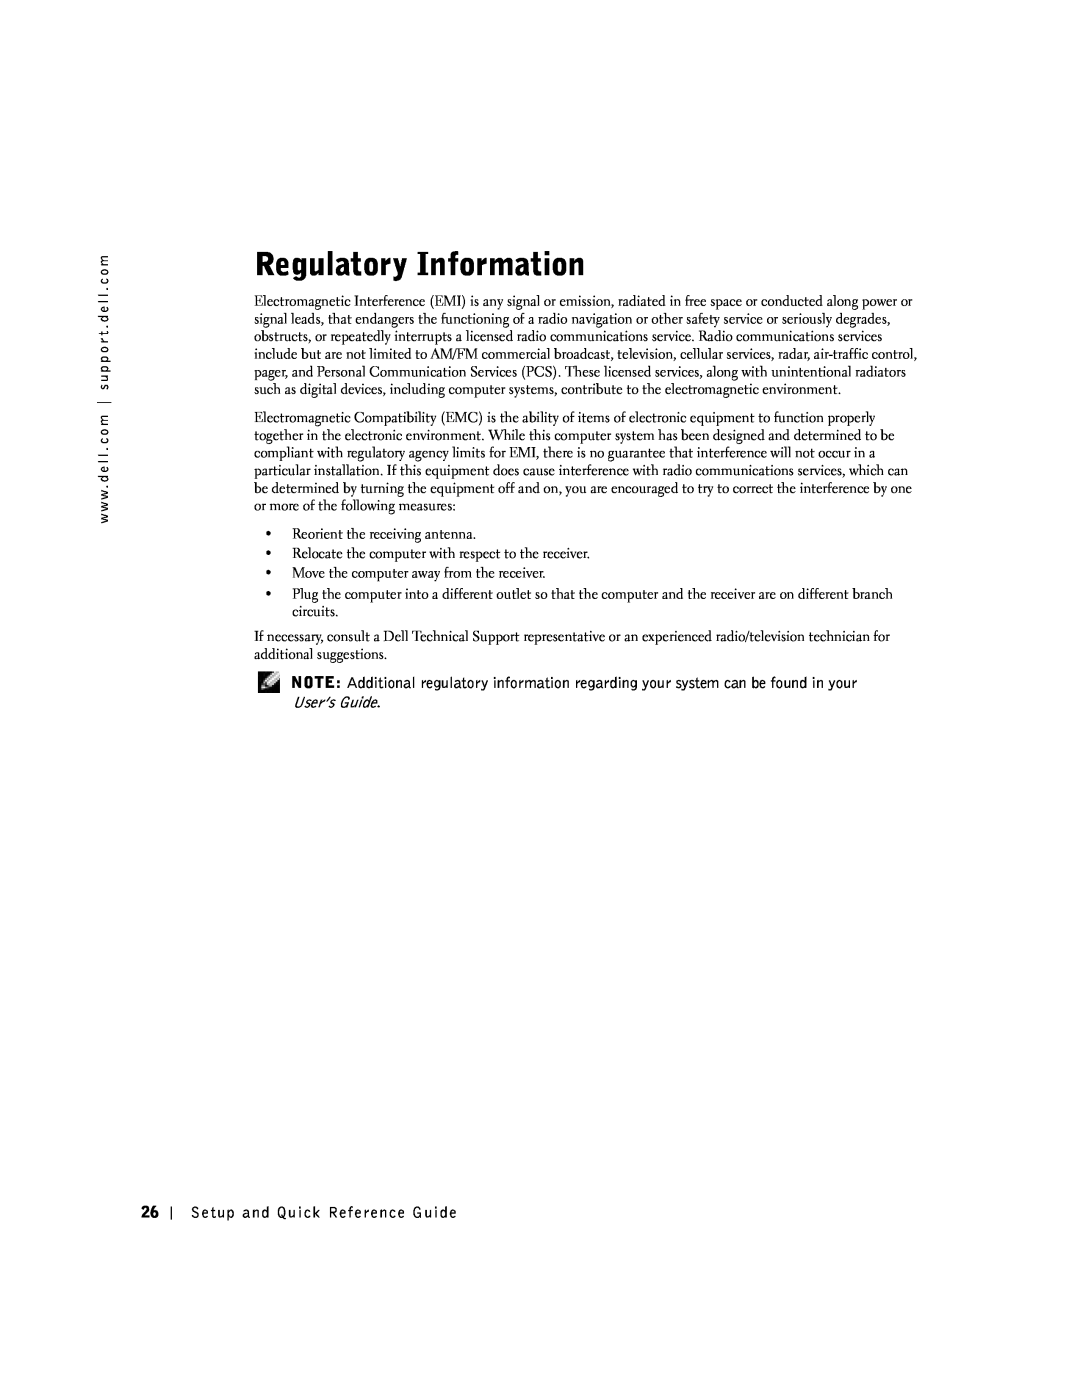 Dell SX manual Regulatory Information 